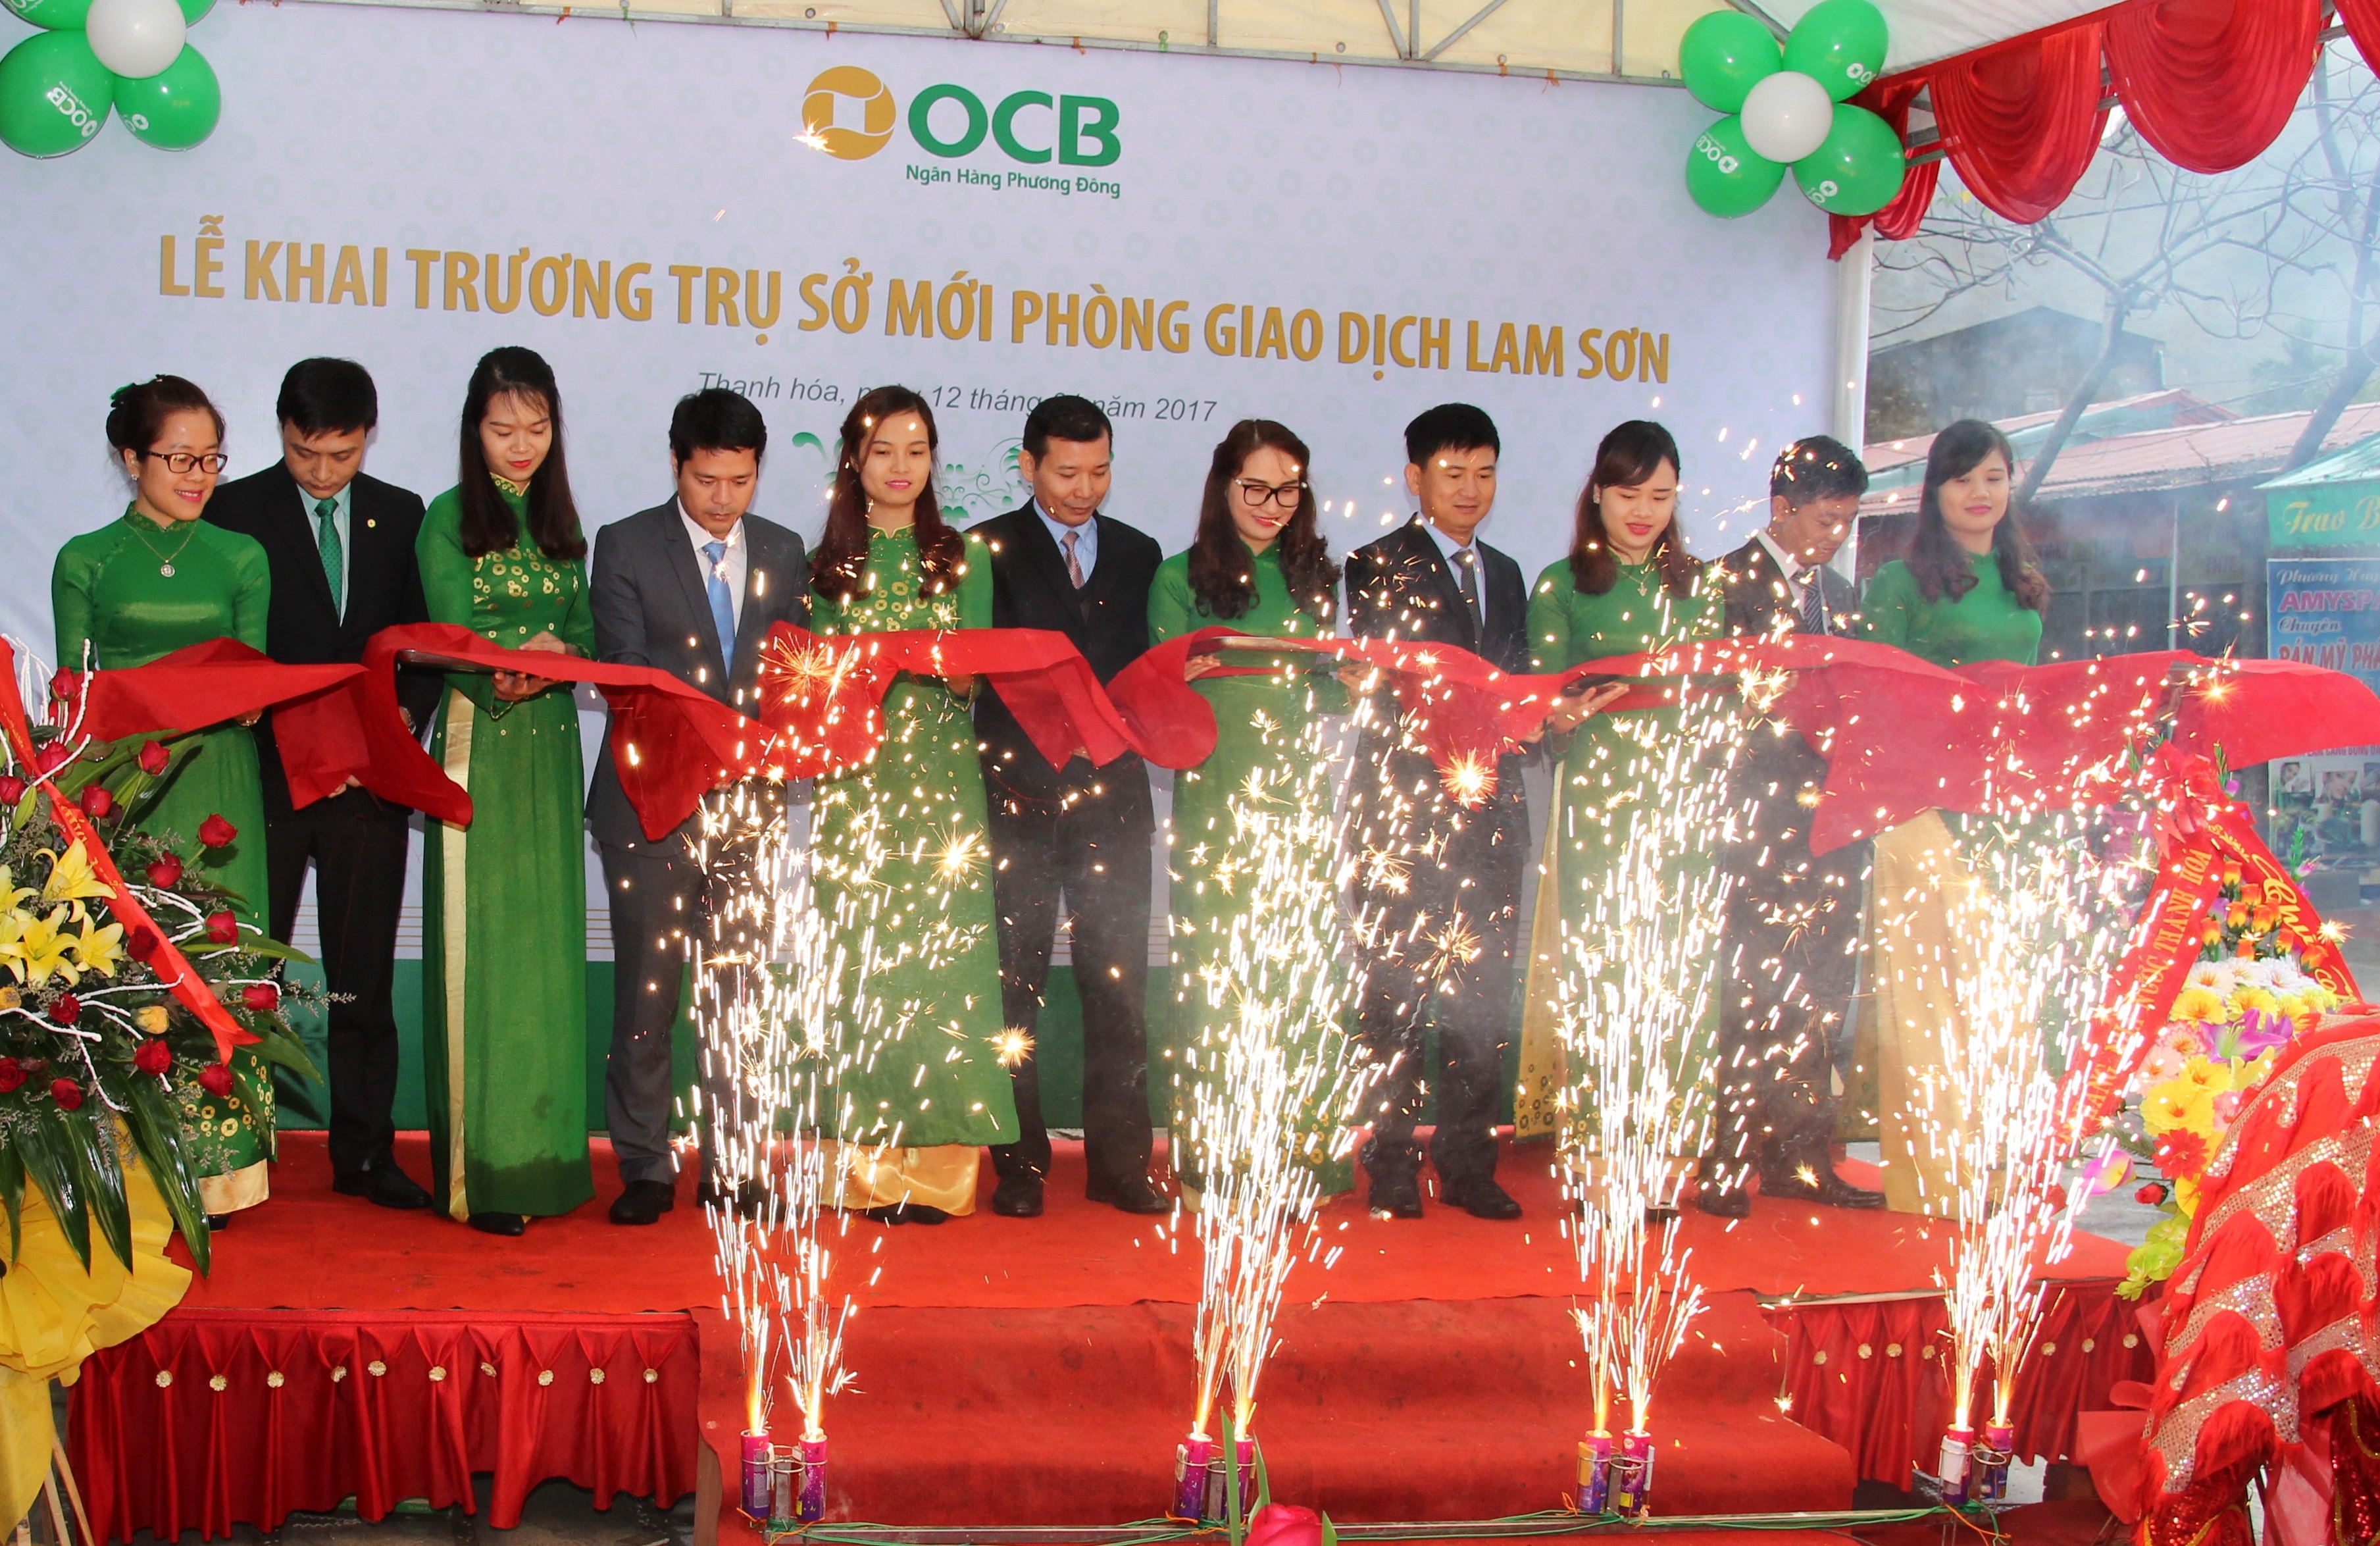 OCB mở phòng giao dịch Lam Sơn tại Thanh Hóa